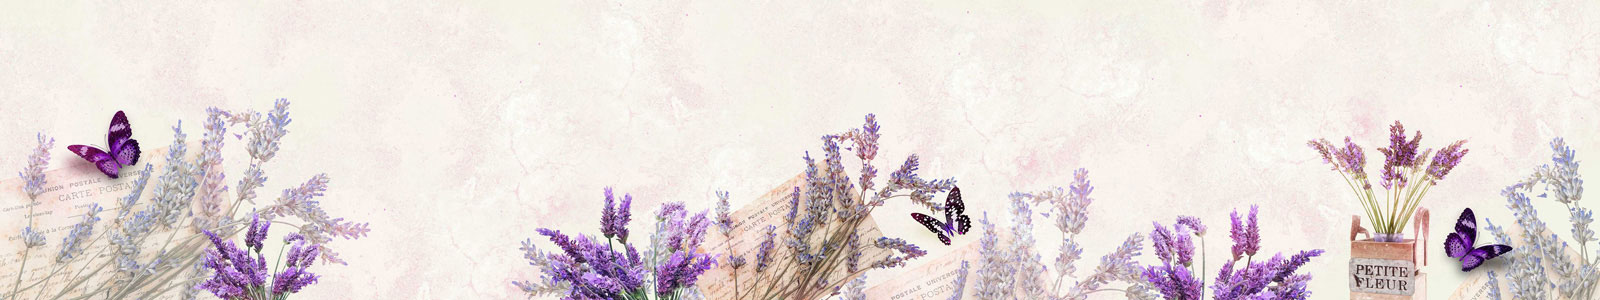 №4948 - Фон с лавандой и бабочками в пурпурном оттенке